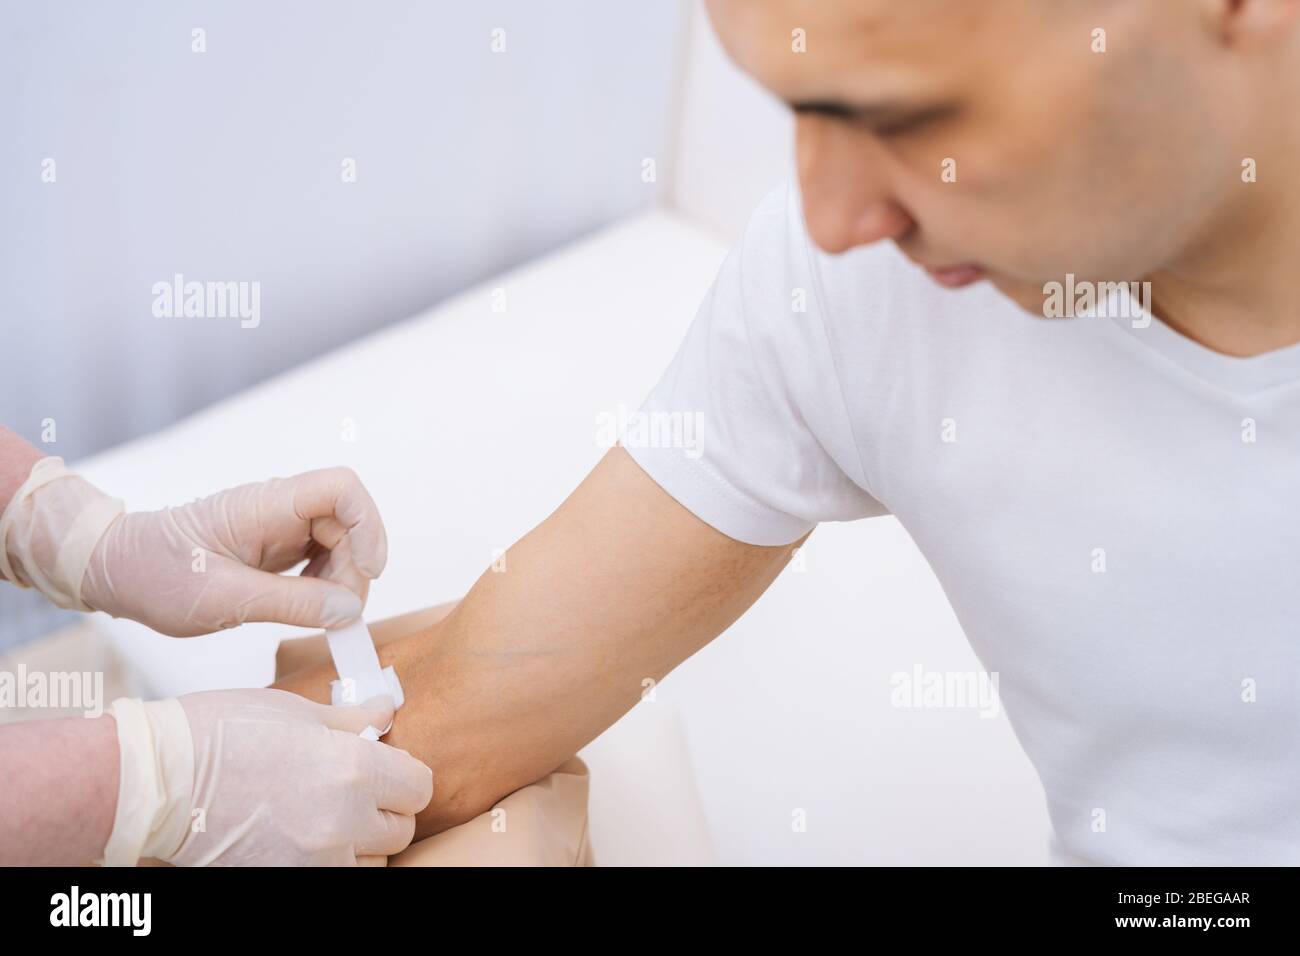 Krankenschwester in Gummischutzhandschuhen, die einen Klebeverband auf den Arm des jungen Mannes legt Stockfoto